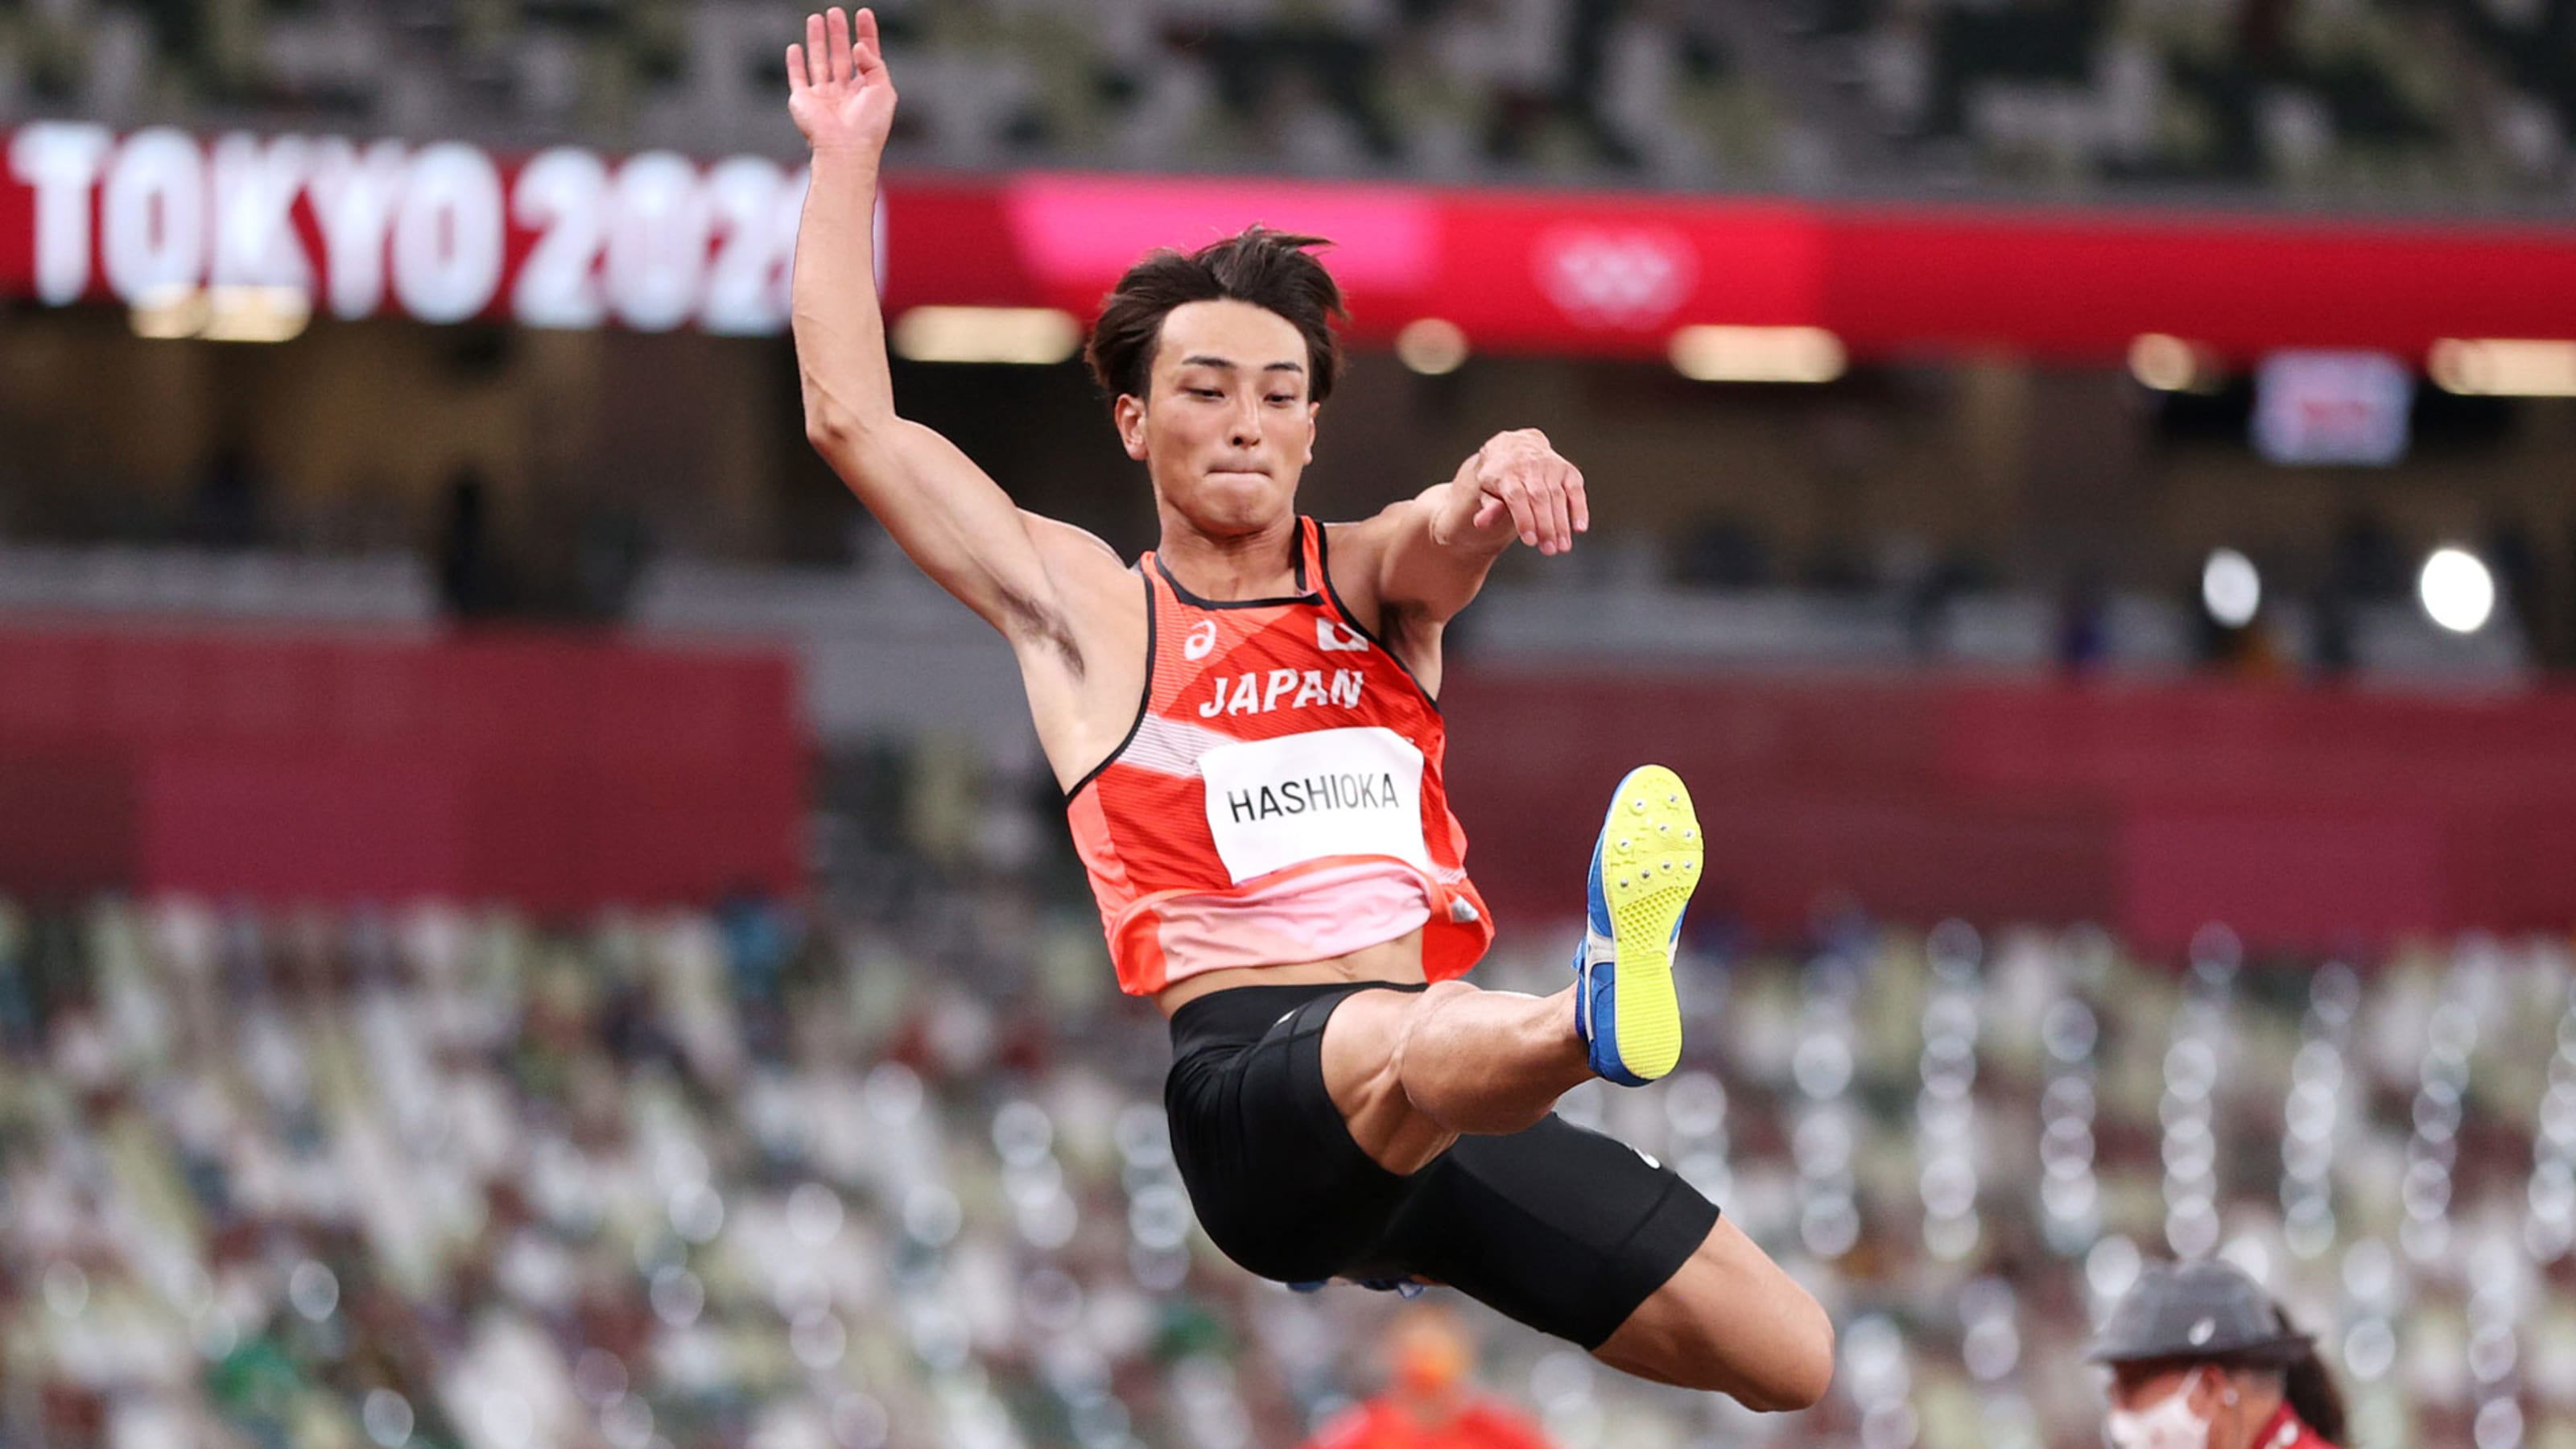 8月2日 東京五輪 陸上競技 男子走幅跳決勝の放送予定 予選3位通過の橋岡優輝 メダル獲得なるか